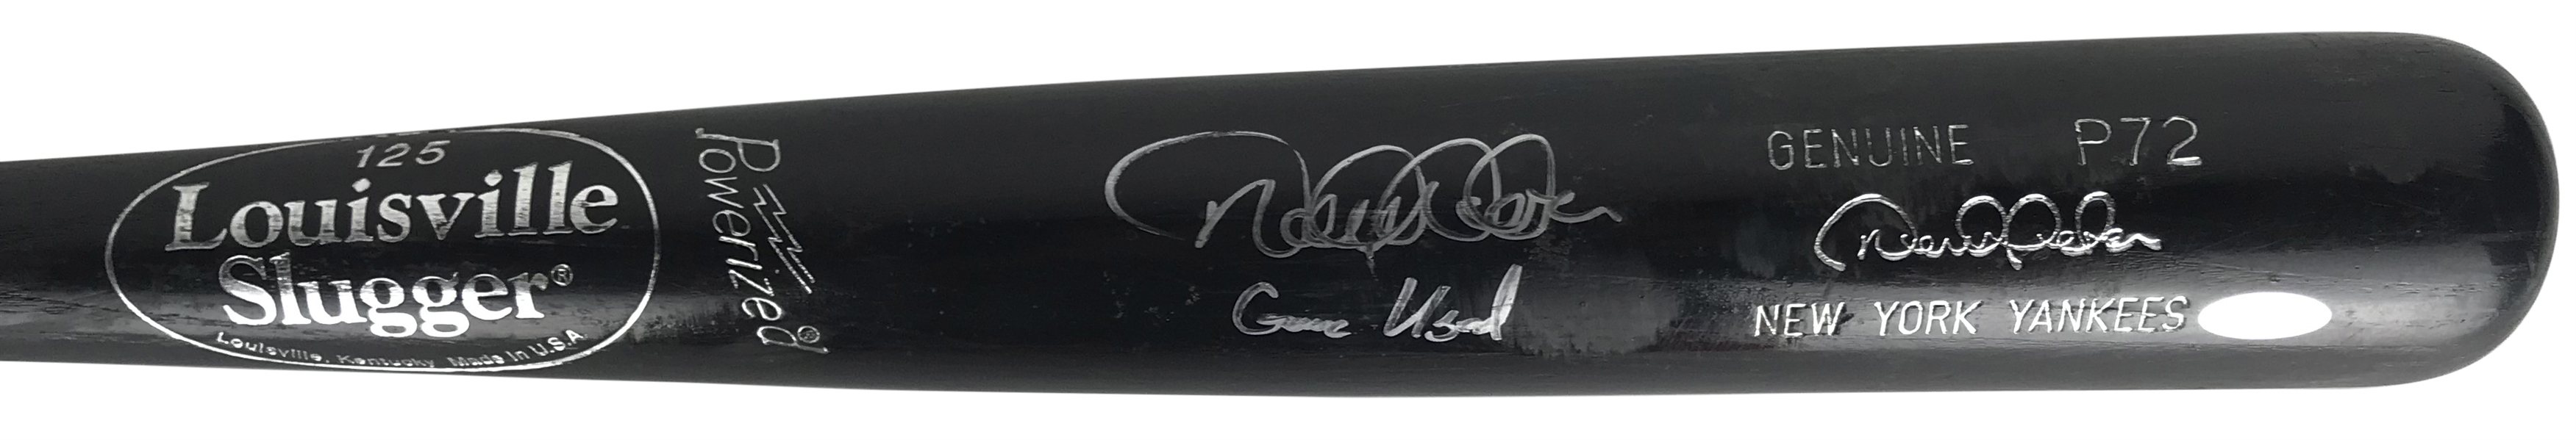 Derek Jeter Signed & Game Used 2001-03 NY Yankees Baseball Bat - PSA/DNA Graded GU 10!